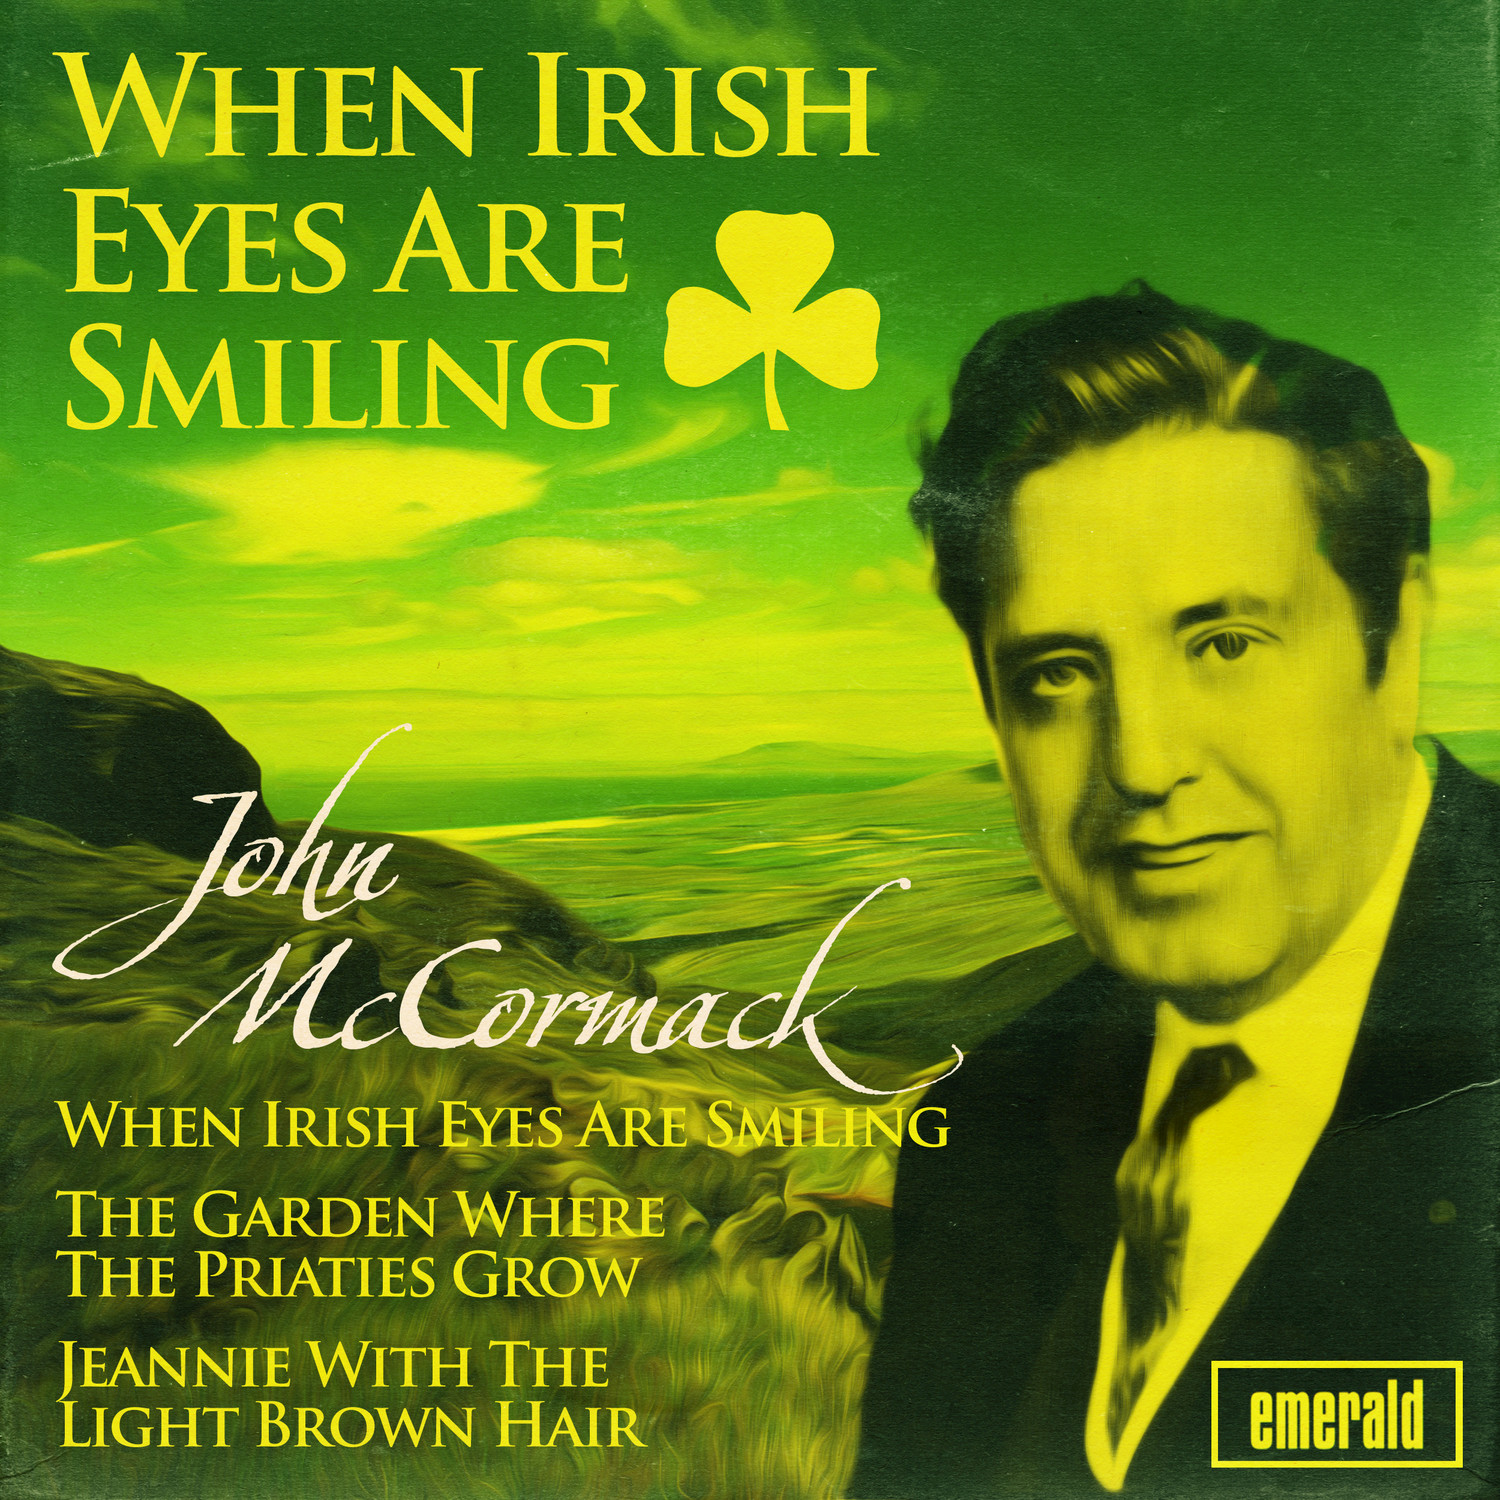 The Irish Emigrant